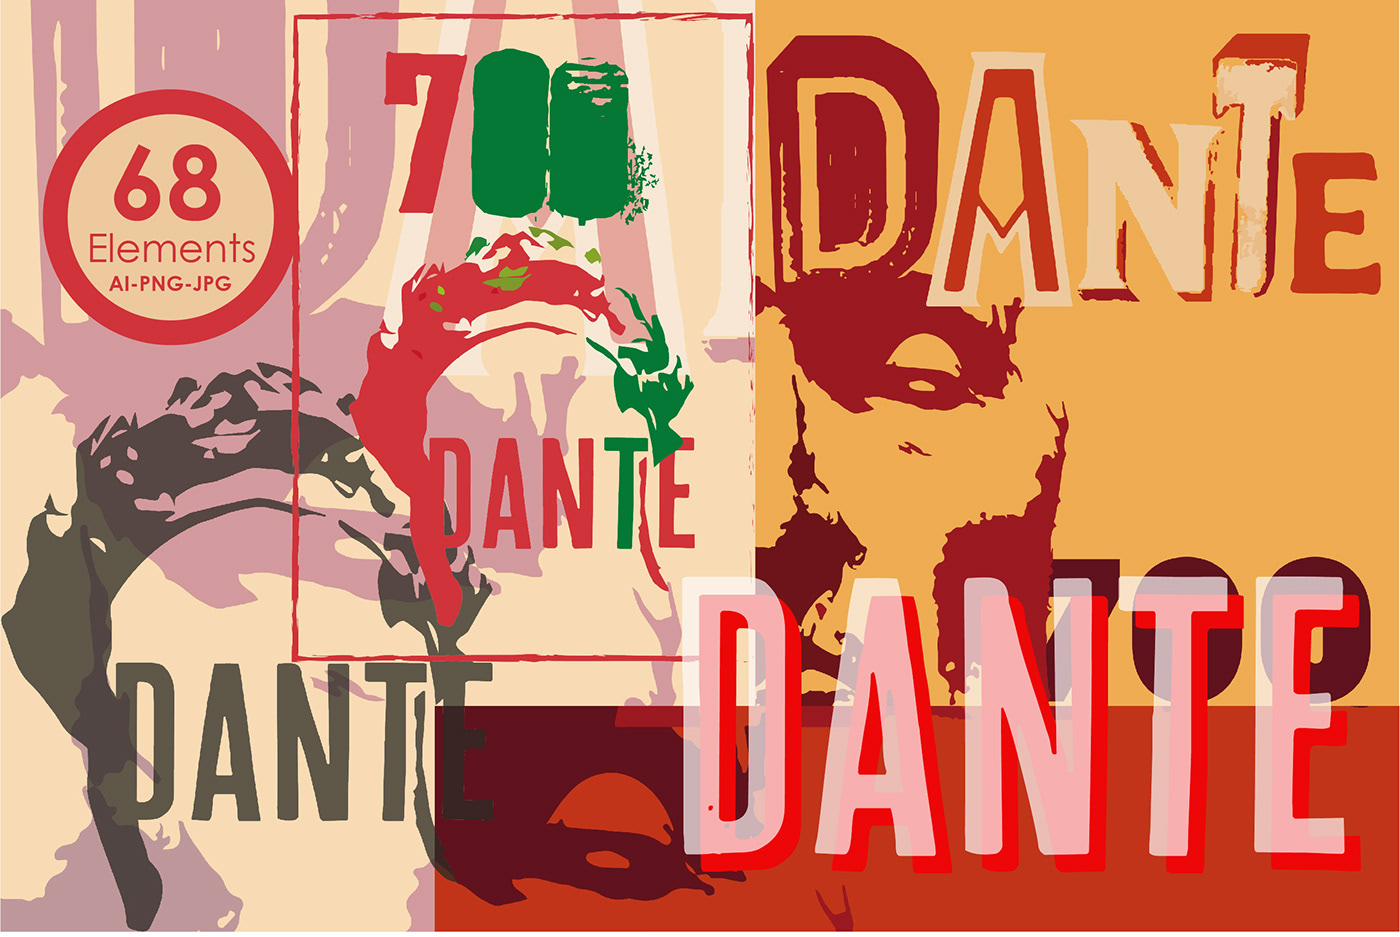 dante Dante 700 dante alighieri Dante Alighieri 700 illustrations Dante illustrazioni Dante lettering Dante Alighieri logos Dante 700 posters Stationery